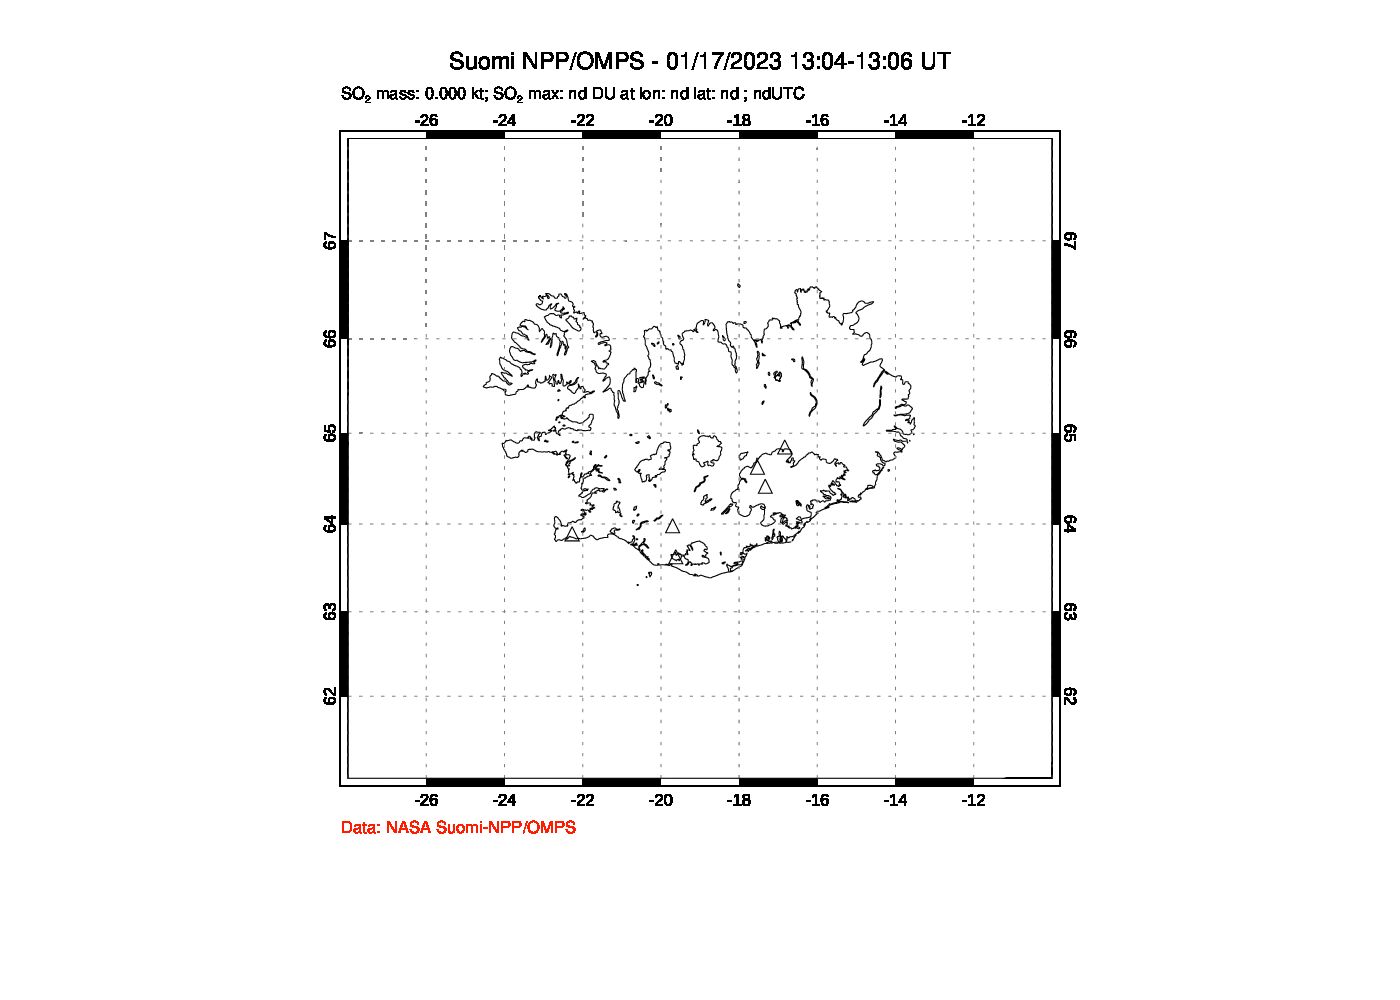 A sulfur dioxide image over Iceland on Jan 17, 2023.